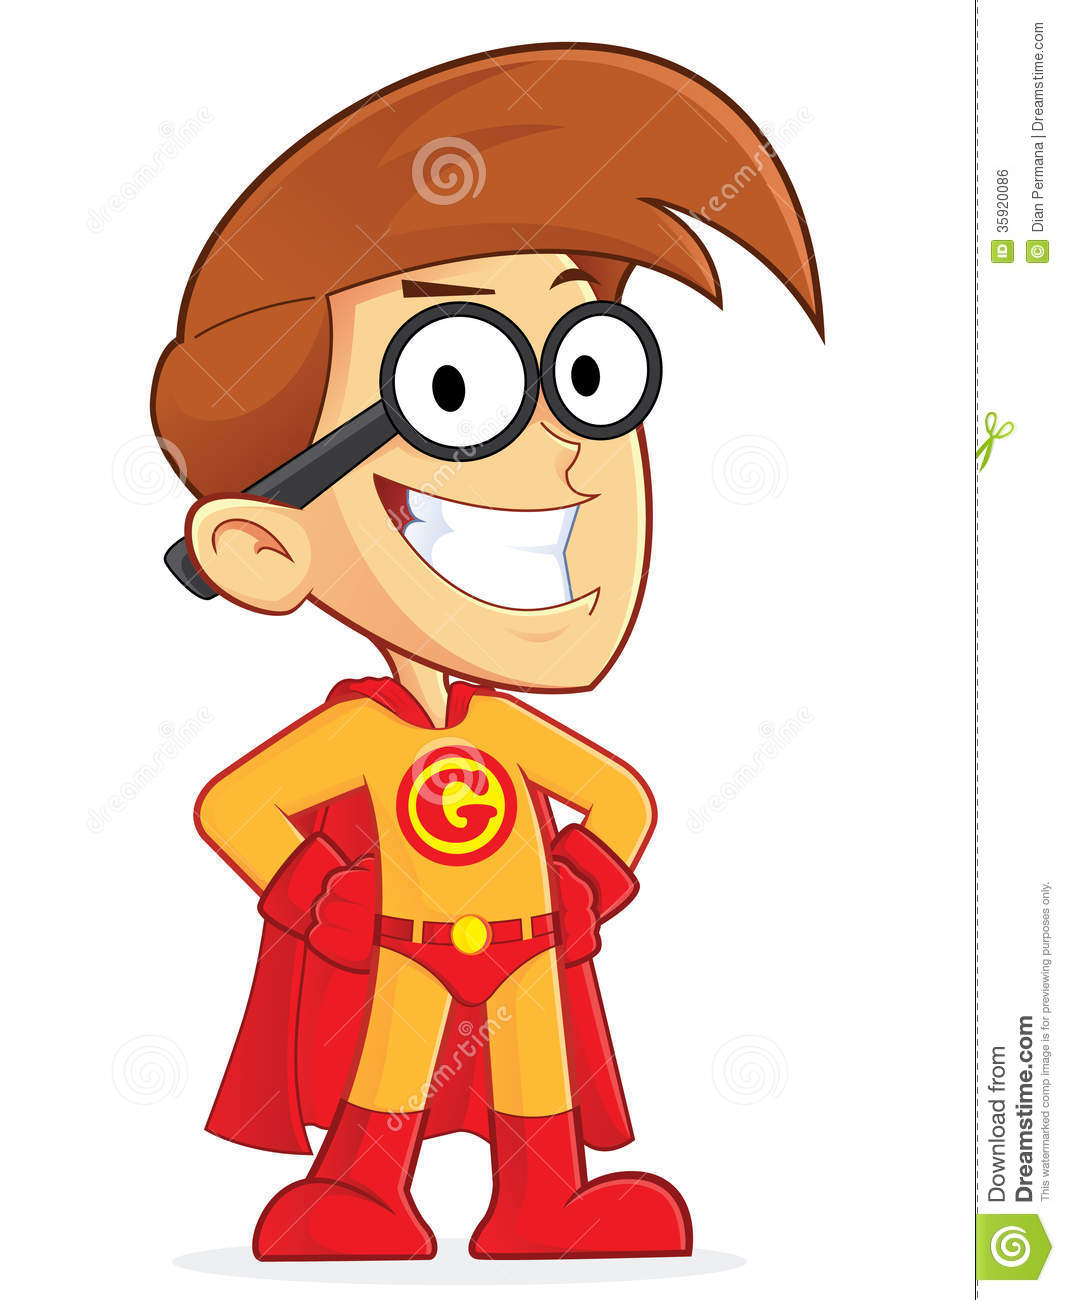 Superhero Nerd Geek Royalty Free Stock Image   Image  35920086